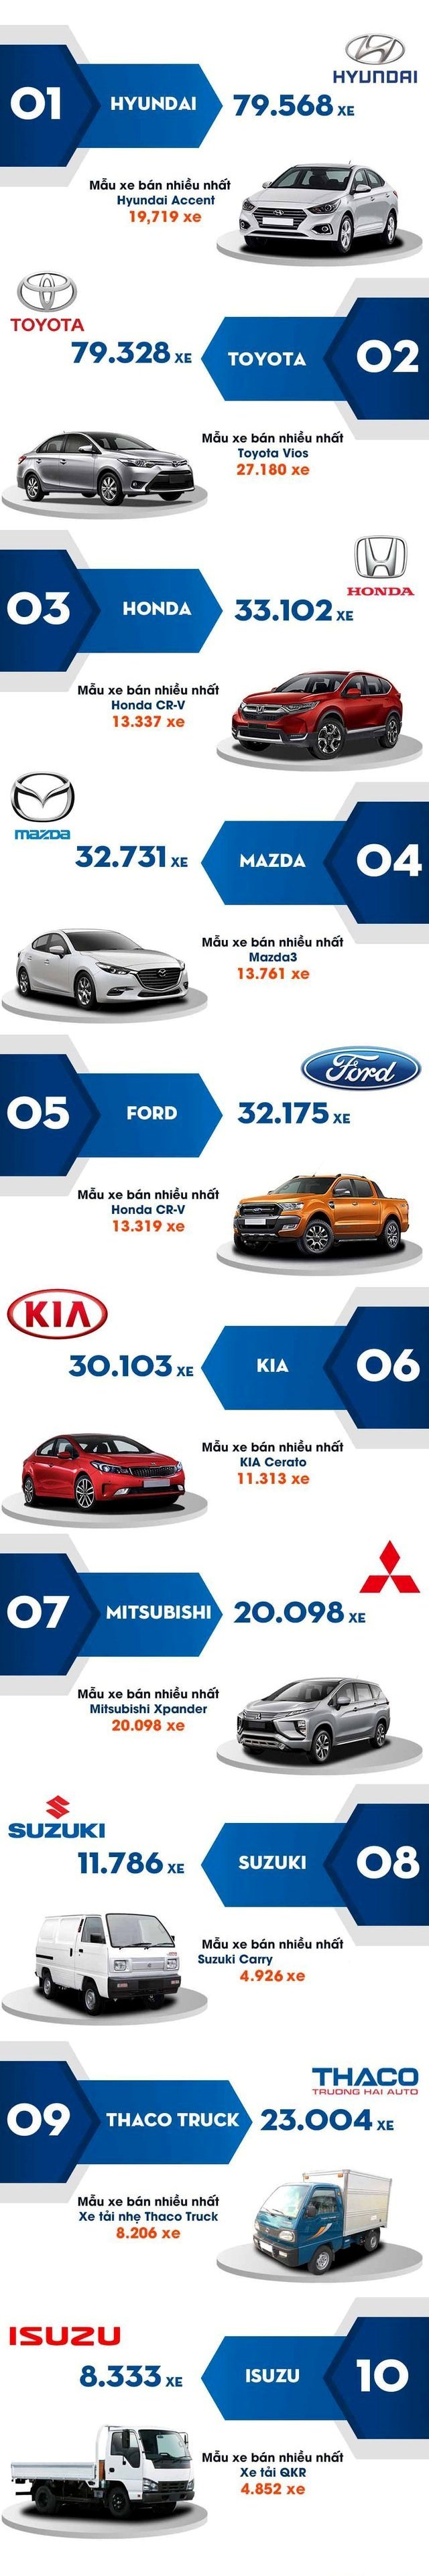 Top 10 thương hiệu ô tô bán chạy nhất Việt Nam năm 2019...